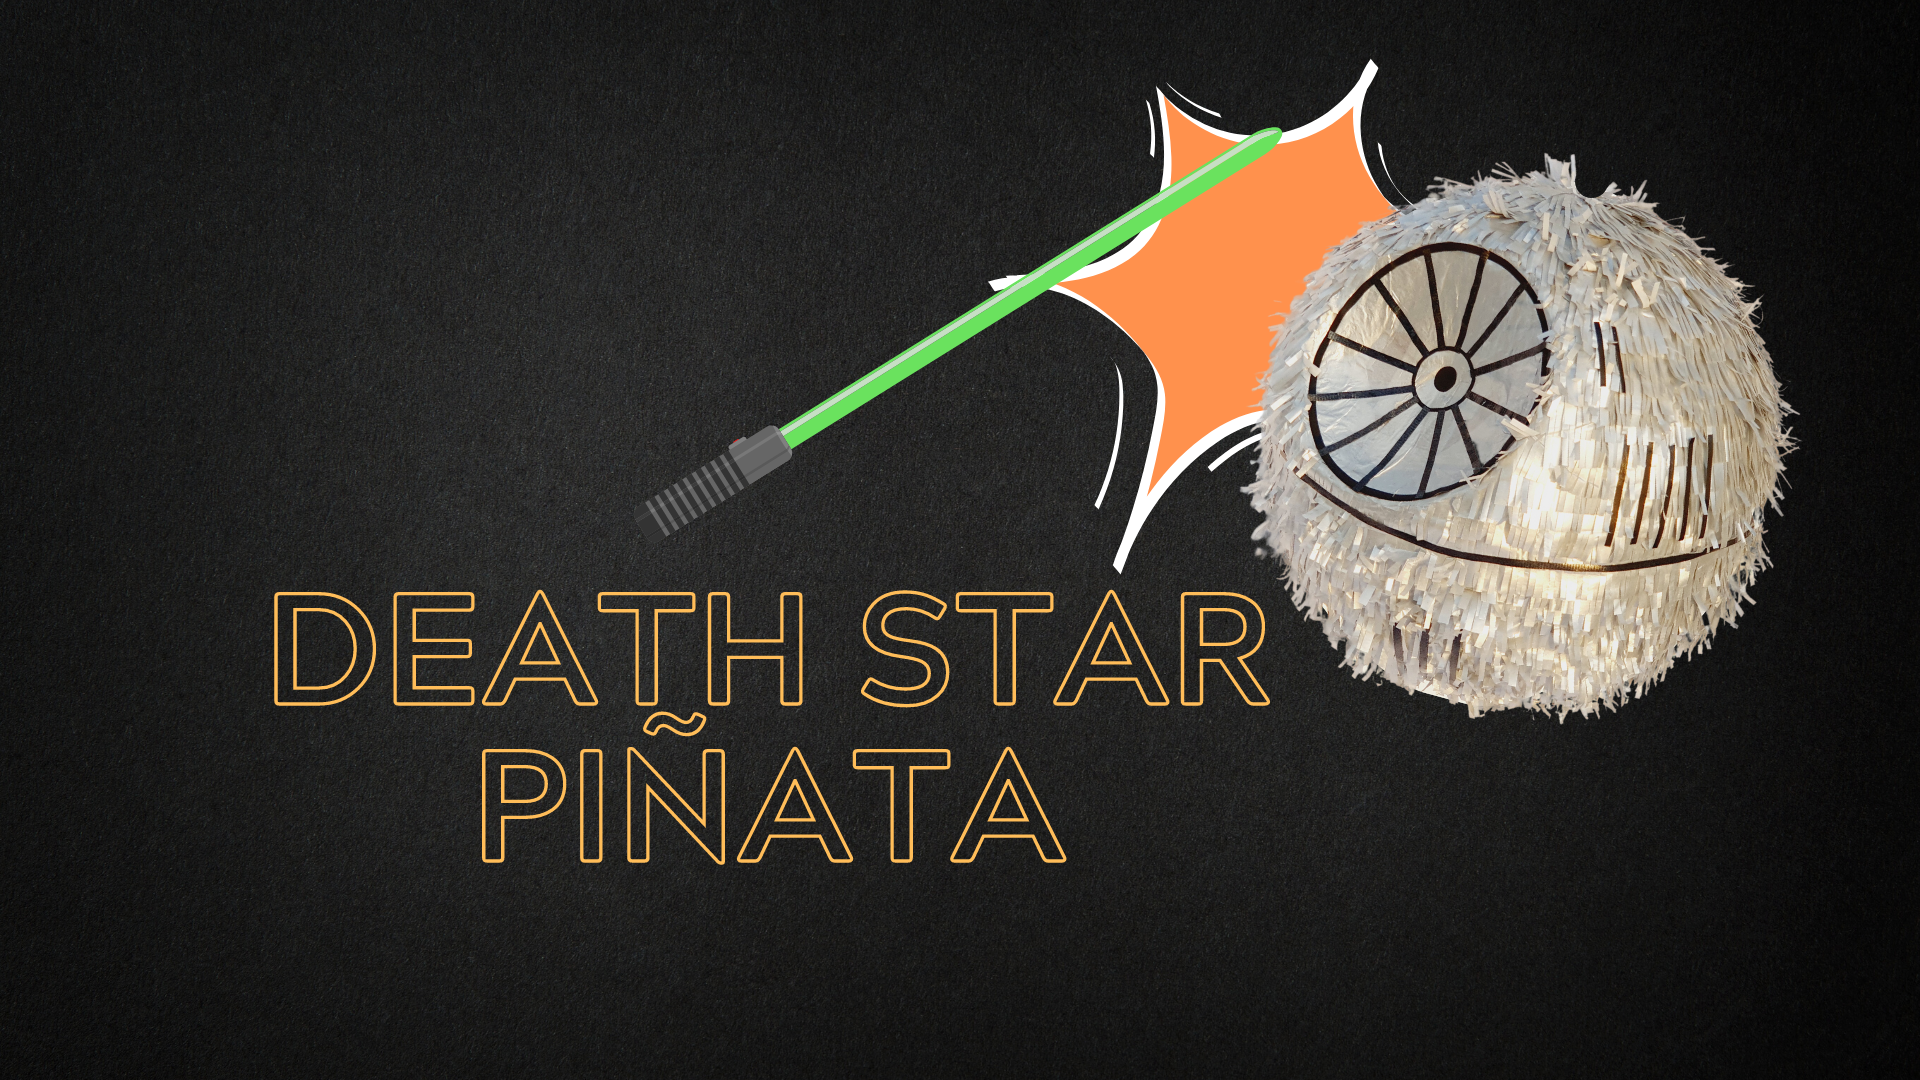 the Death Star Piñata